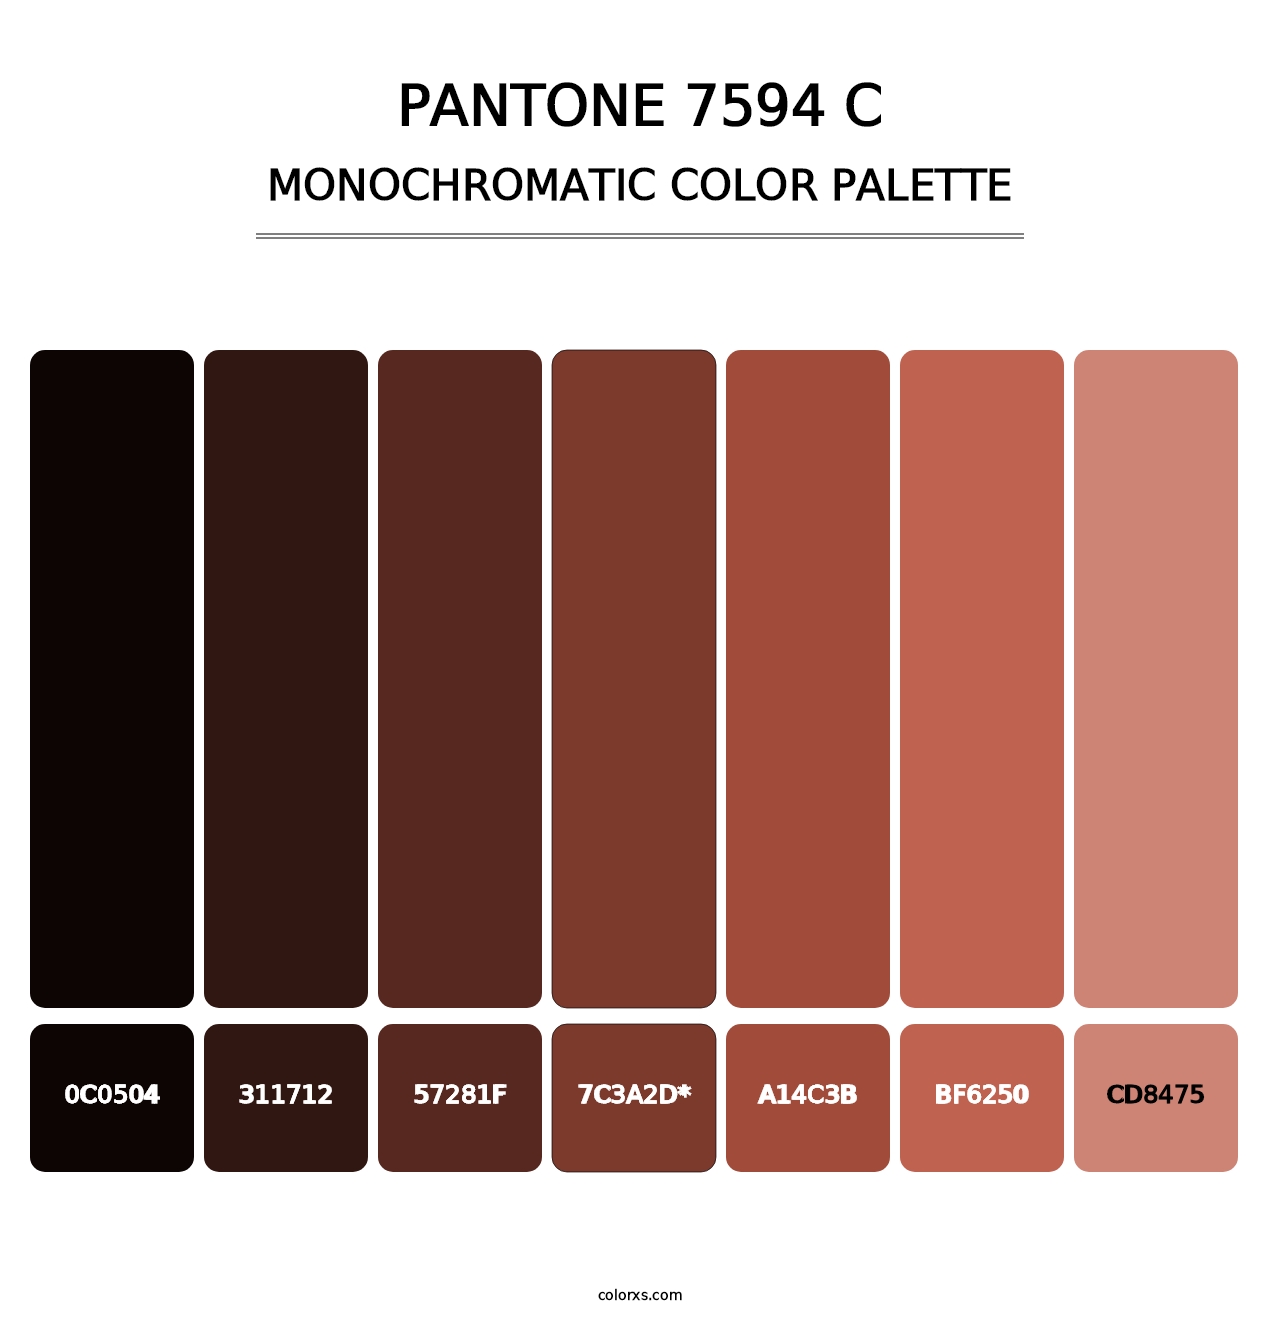 PANTONE 7594 C - Monochromatic Color Palette